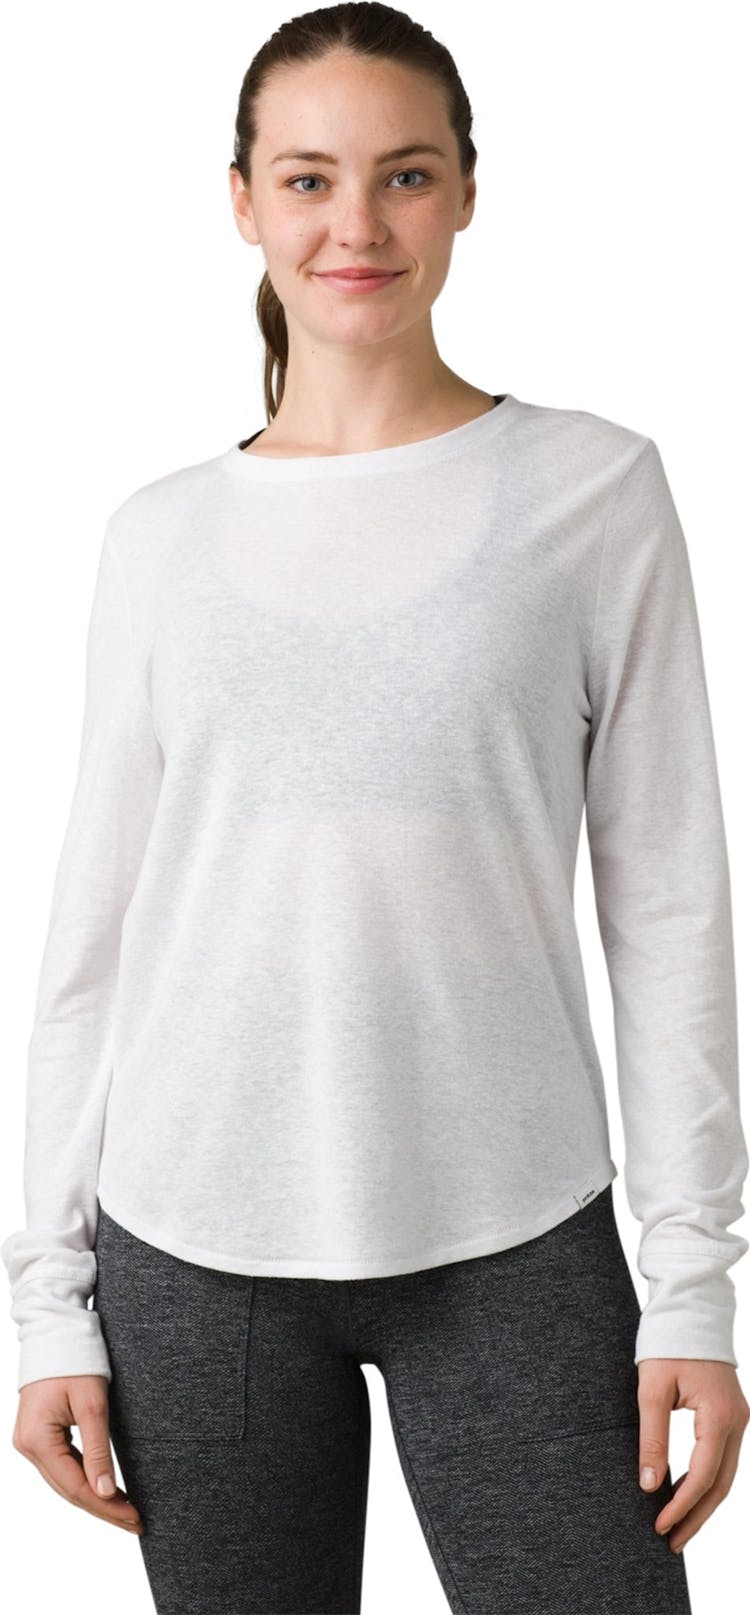 Numéro de l'image de la galerie de produits 1 pour le produit T-shirt à manches longues Cozy Up - Femme